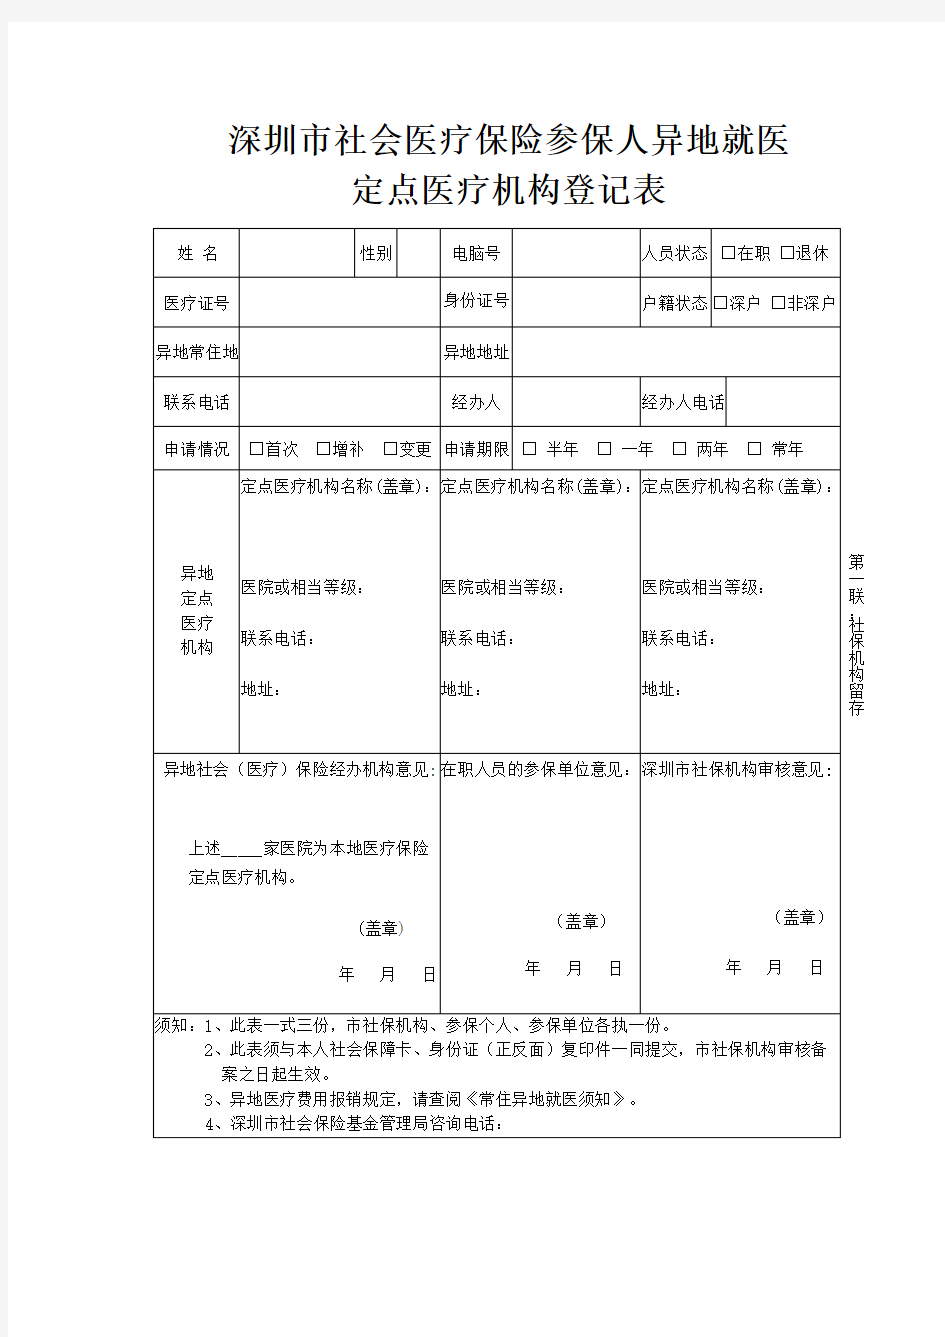 深圳市社会医疗保险参保人异地就医定点医疗机构登记表